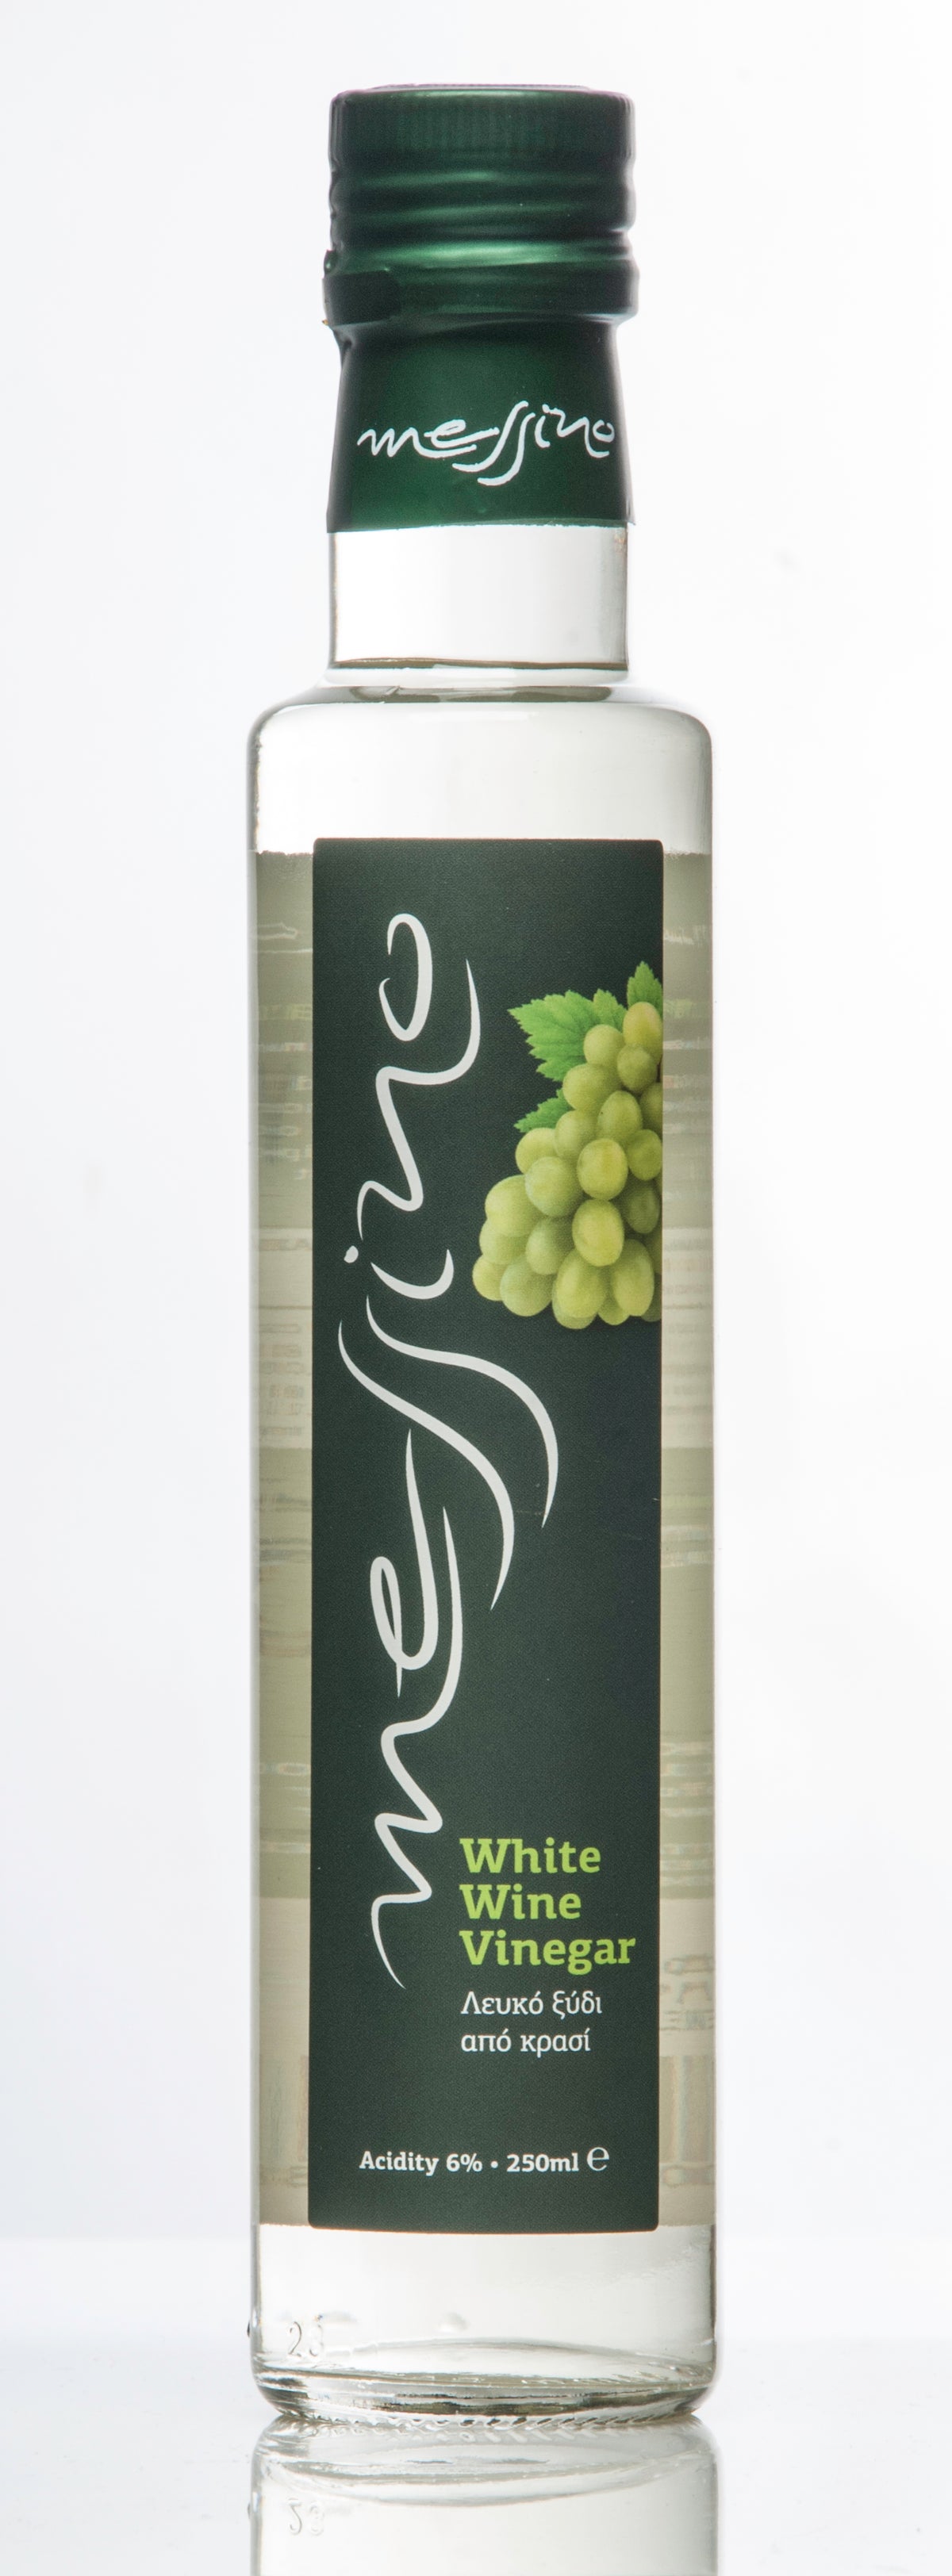 Front label of bottle of Messino White Wine Vinegar